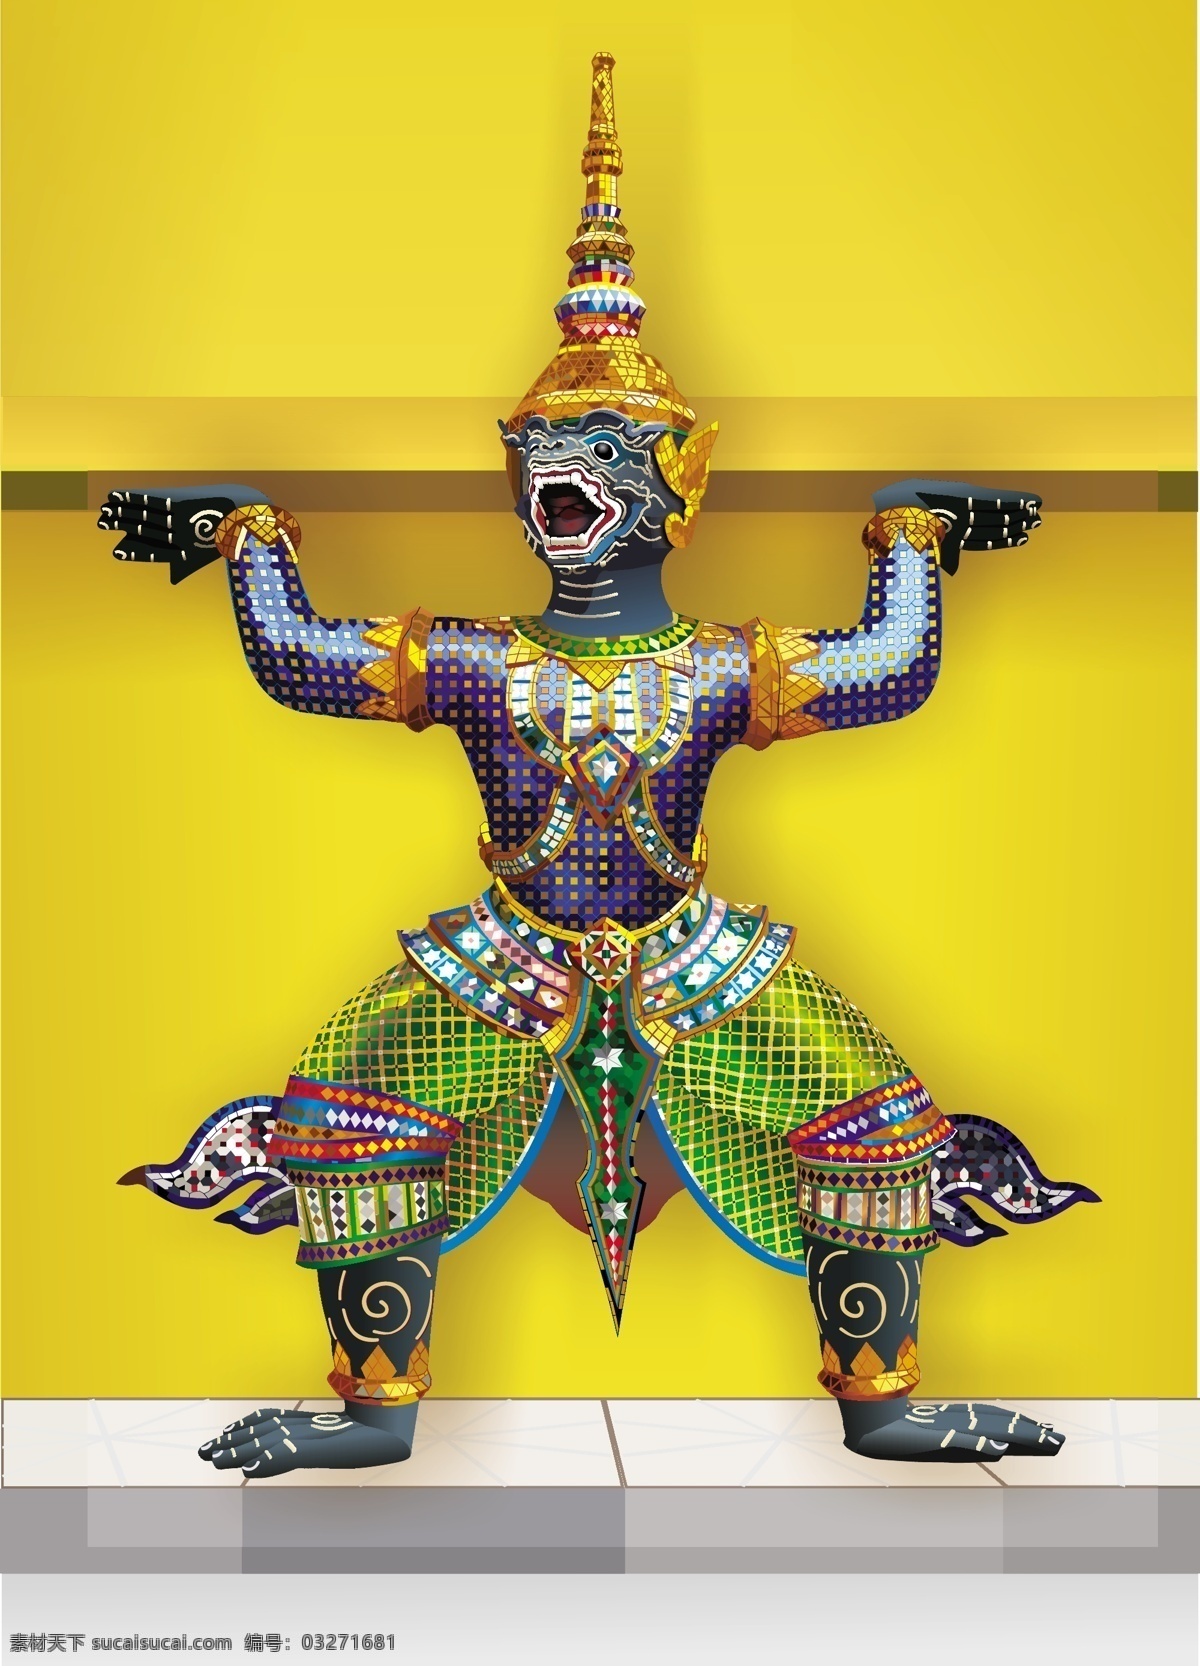 泰国 神像 努曼 泰国神像 泰国文化 泰国传统 泰国哈努曼 哈努曼神像 哈努曼 共享设计矢量 文化艺术 传统文化